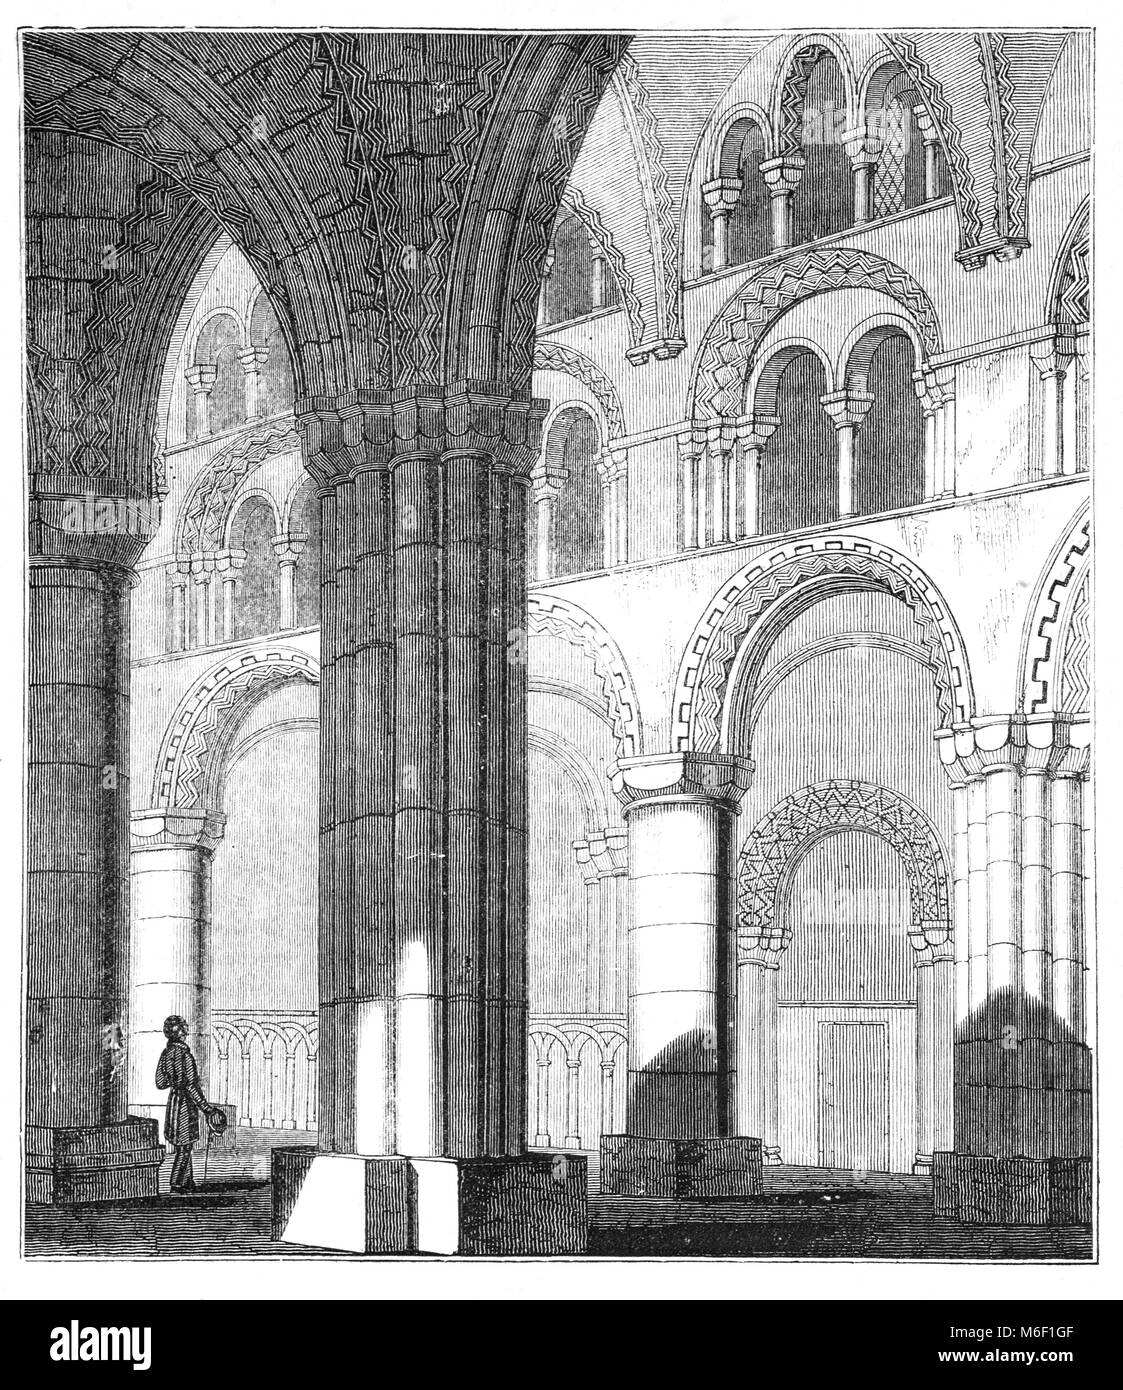 Das kirchenschiff der Normannischen Romanik Durham Cathedral, der Heimat der Schrein von St. Cuthbert. Die heutige Kathedrale in der Stadt Durham, England, ersetzt im 10. Jahrhundert der "weißen Kirche', als Teil einer klösterlichen Stiftung der Schrein des Heiligen Cuthbert von Lindisfarne zu Haus gebaut. Stockfoto